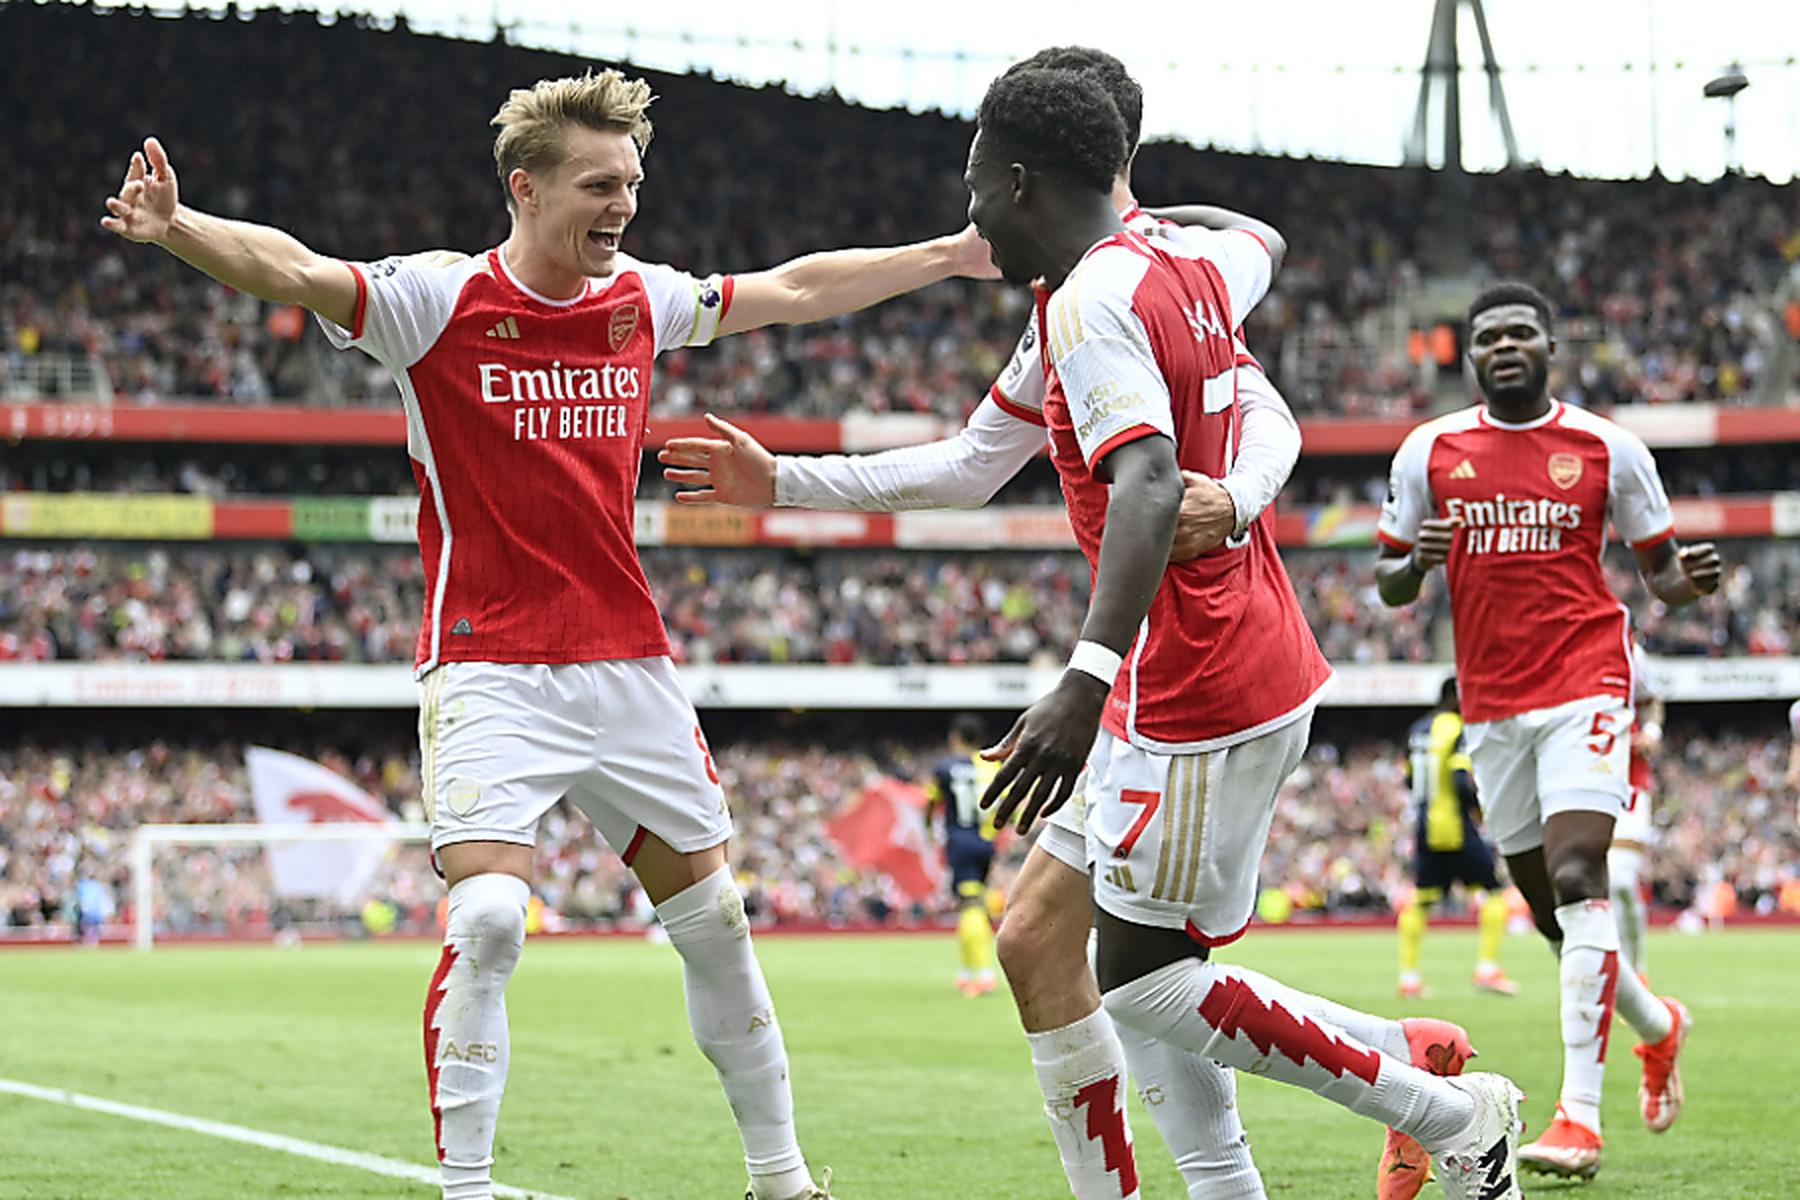 London: Arsenal legt vor - 3:0-Heimsieg über Bournemouth